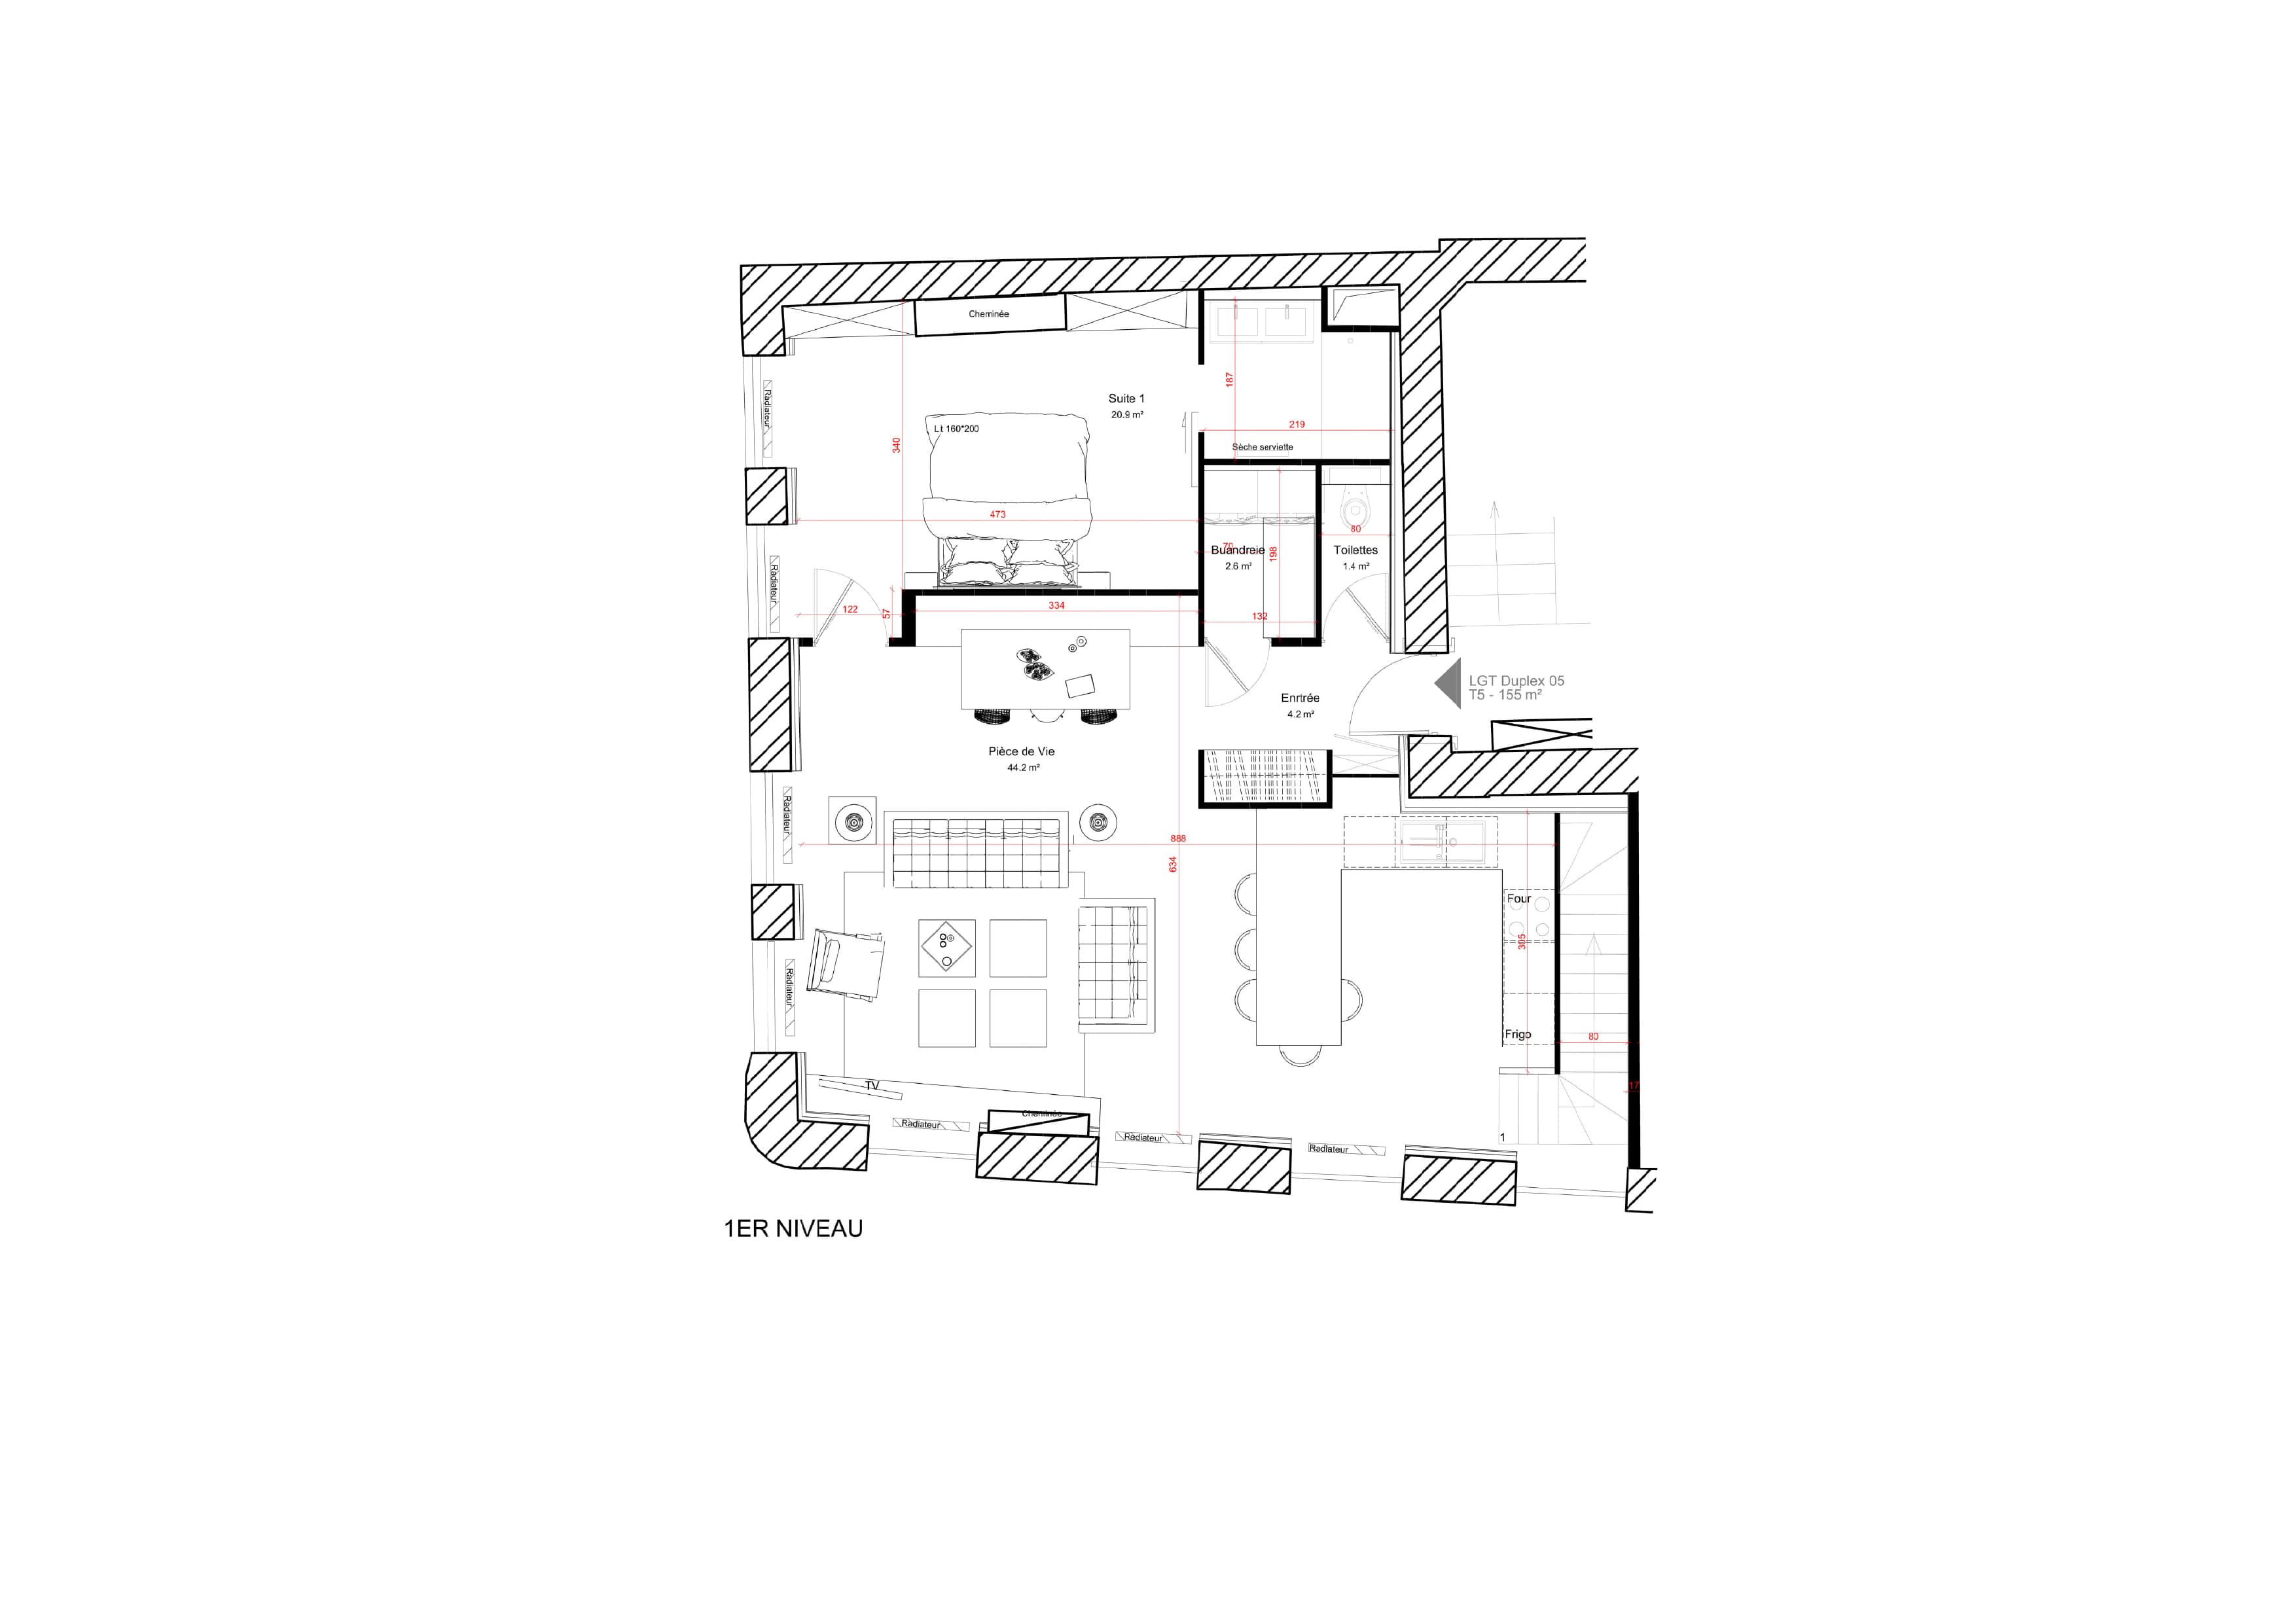 Plan duplex 150 m² avec 4 chambres et bureaux - 1er niveau